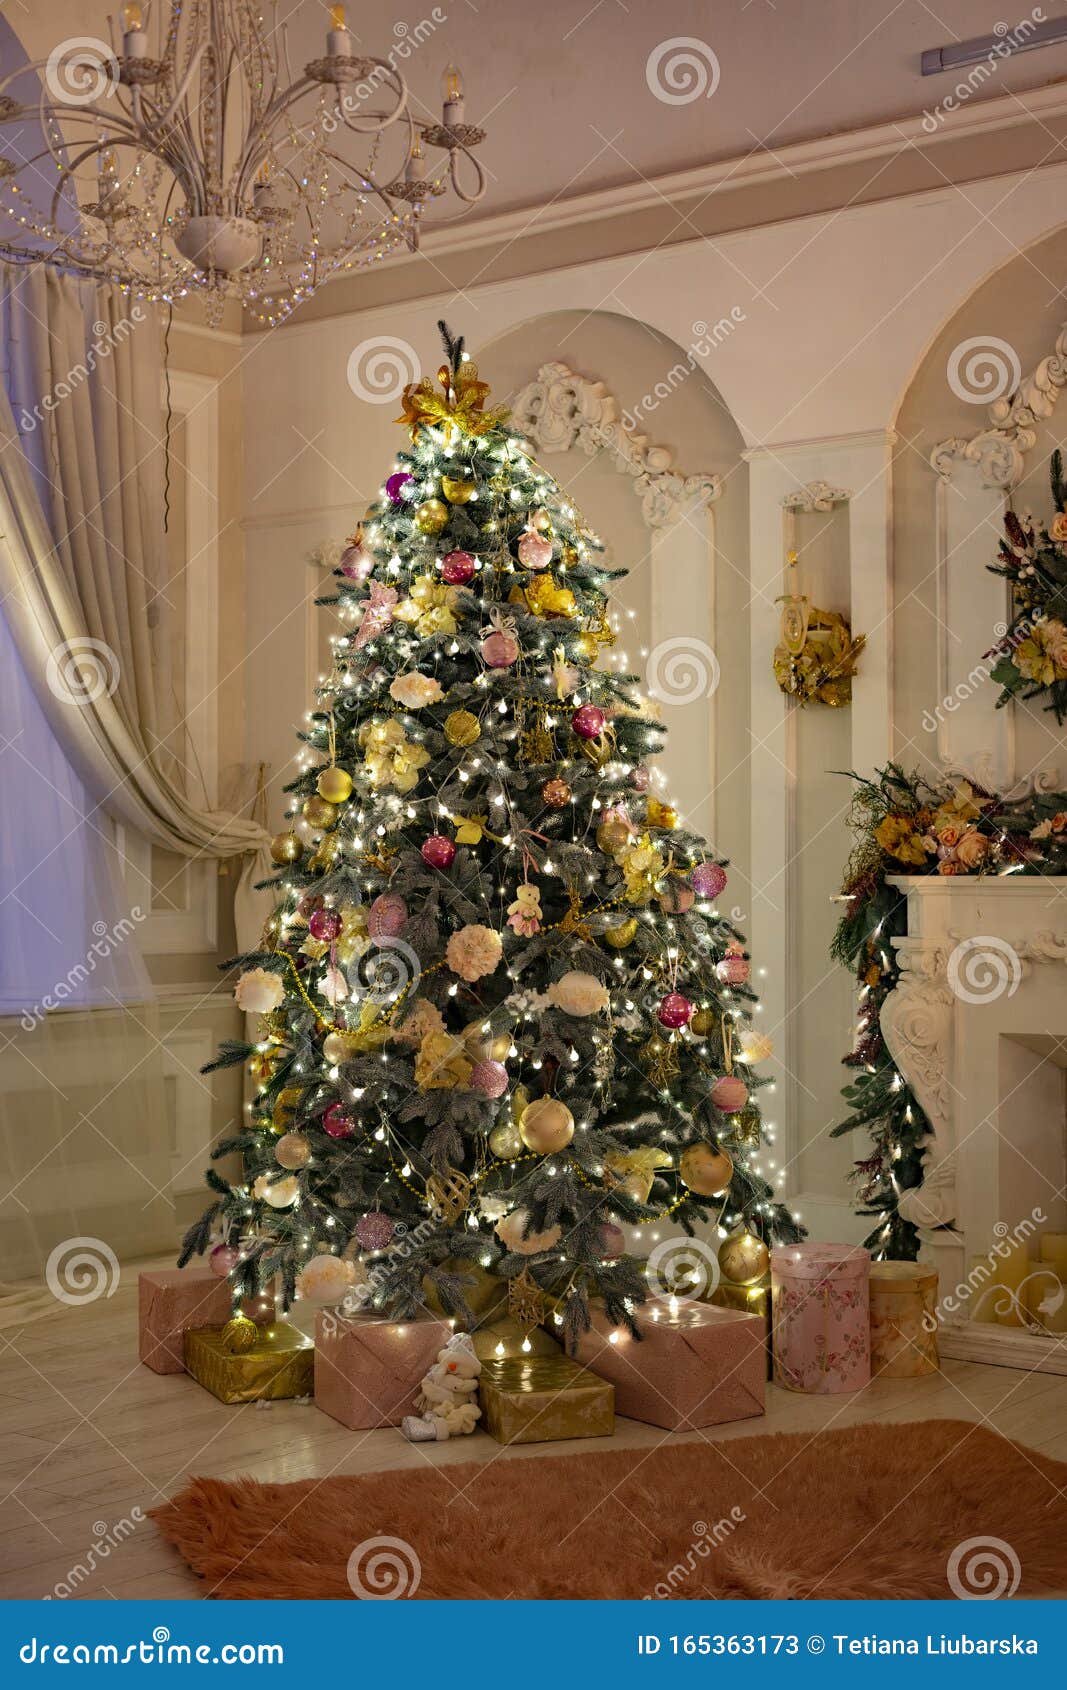 Meerdere waardigheid circulatie Mooie Kamer Met Haard Kerstboom En Land Stock Afbeelding - Image of  verlichting, comfortabel: 165363173